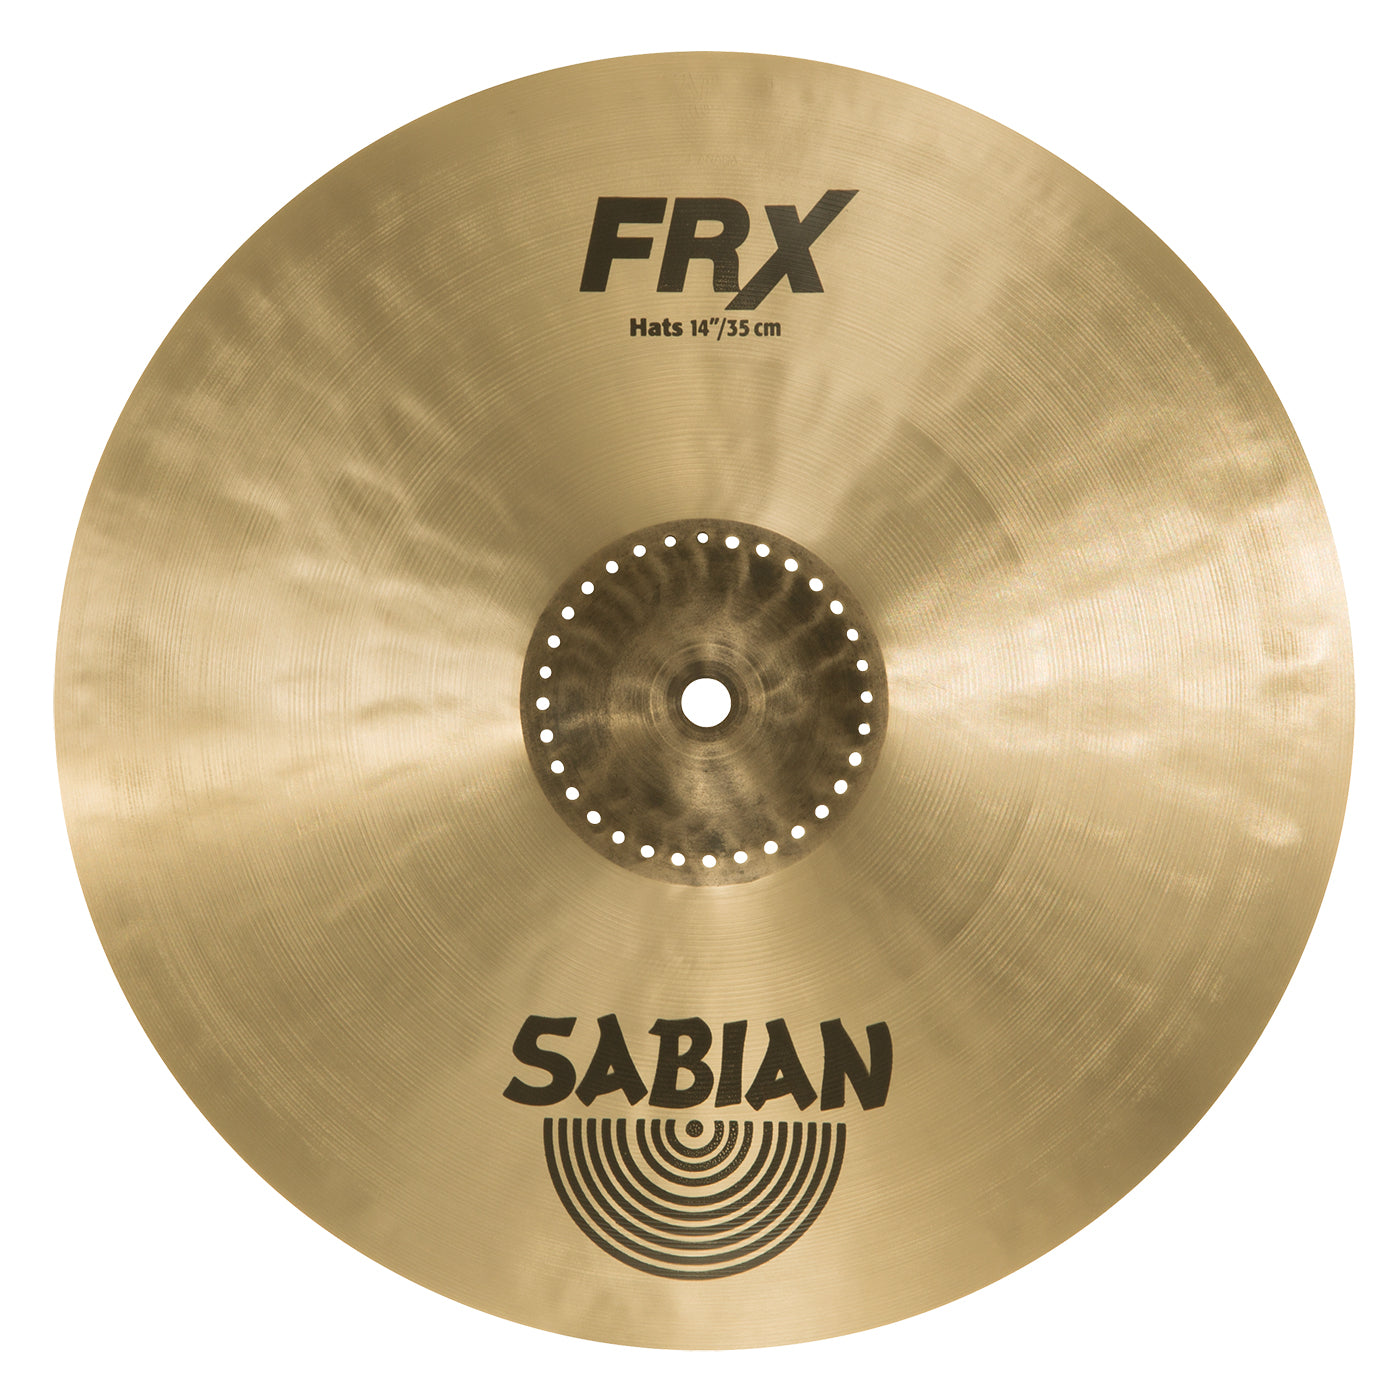 Sabian 14” Hi-Hat Top FRX